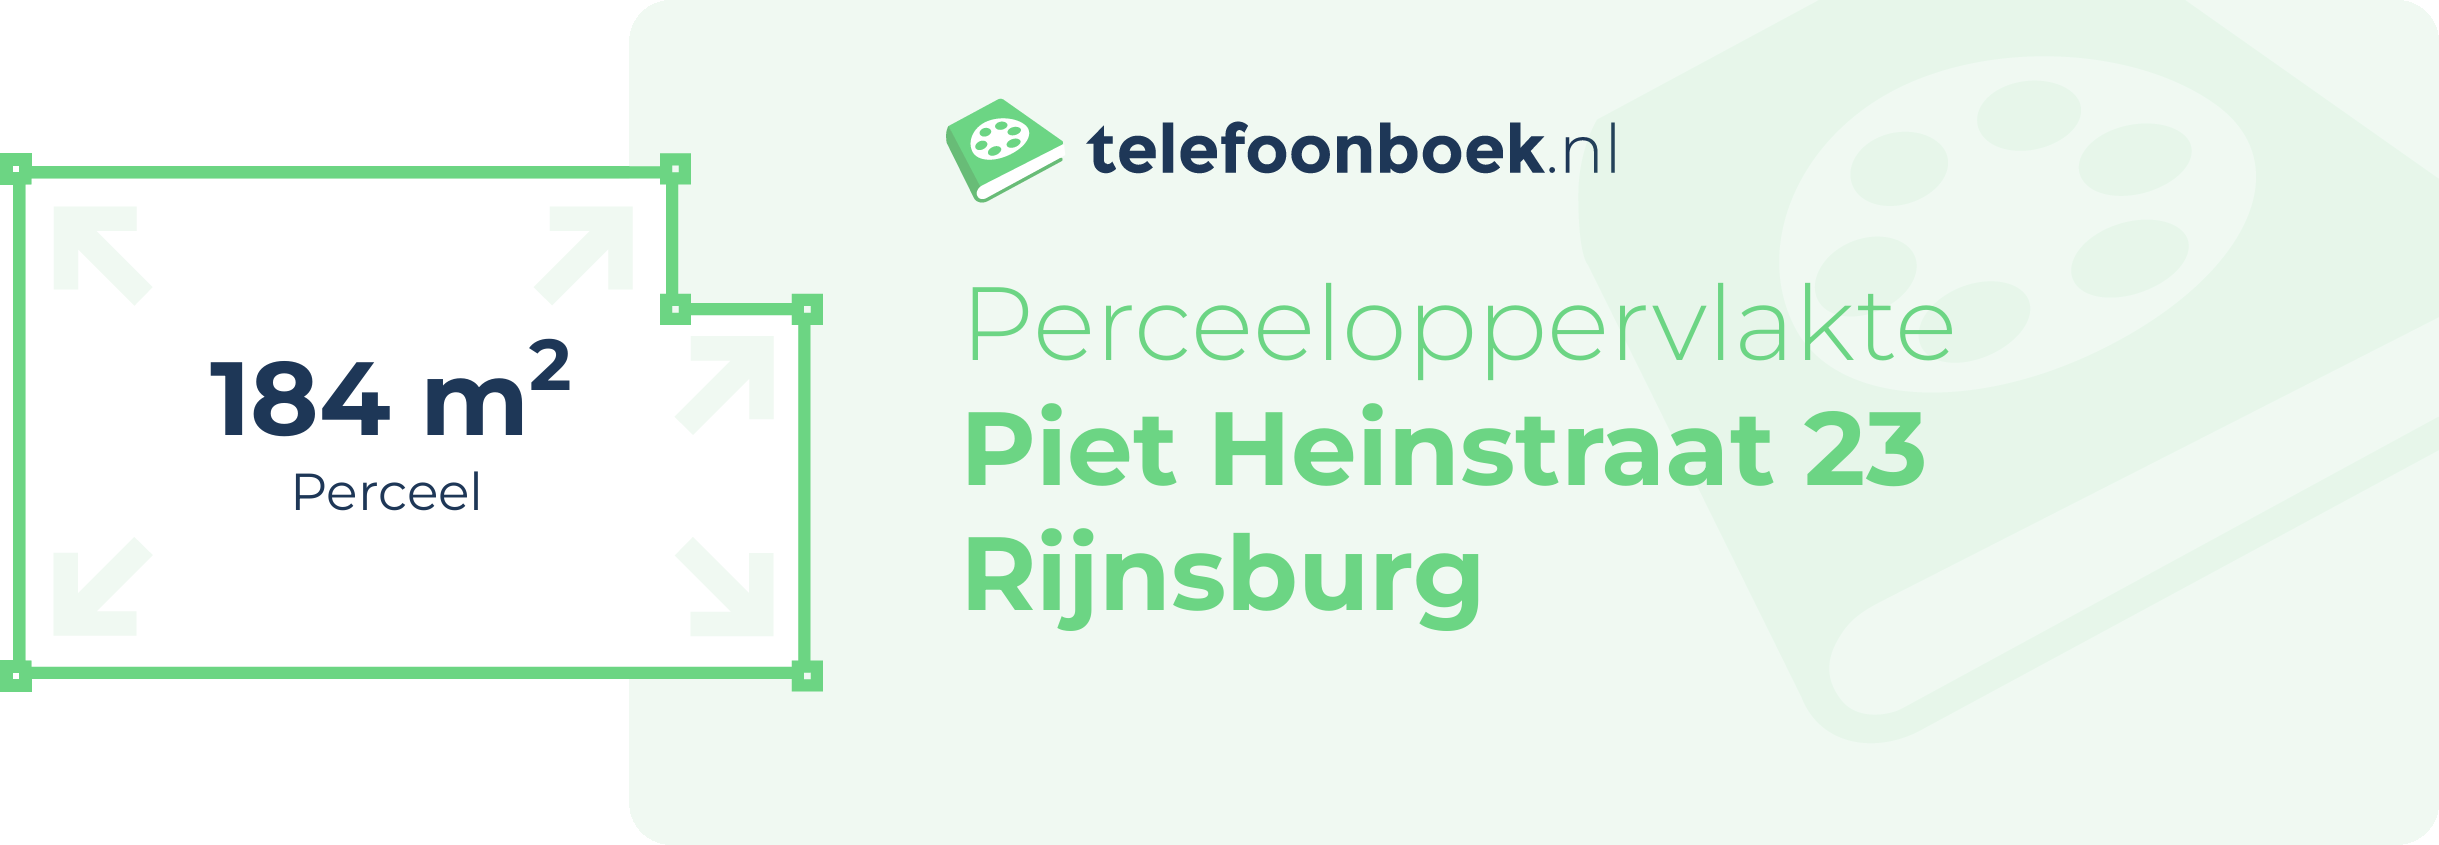 Perceeloppervlakte Piet Heinstraat 23 Rijnsburg